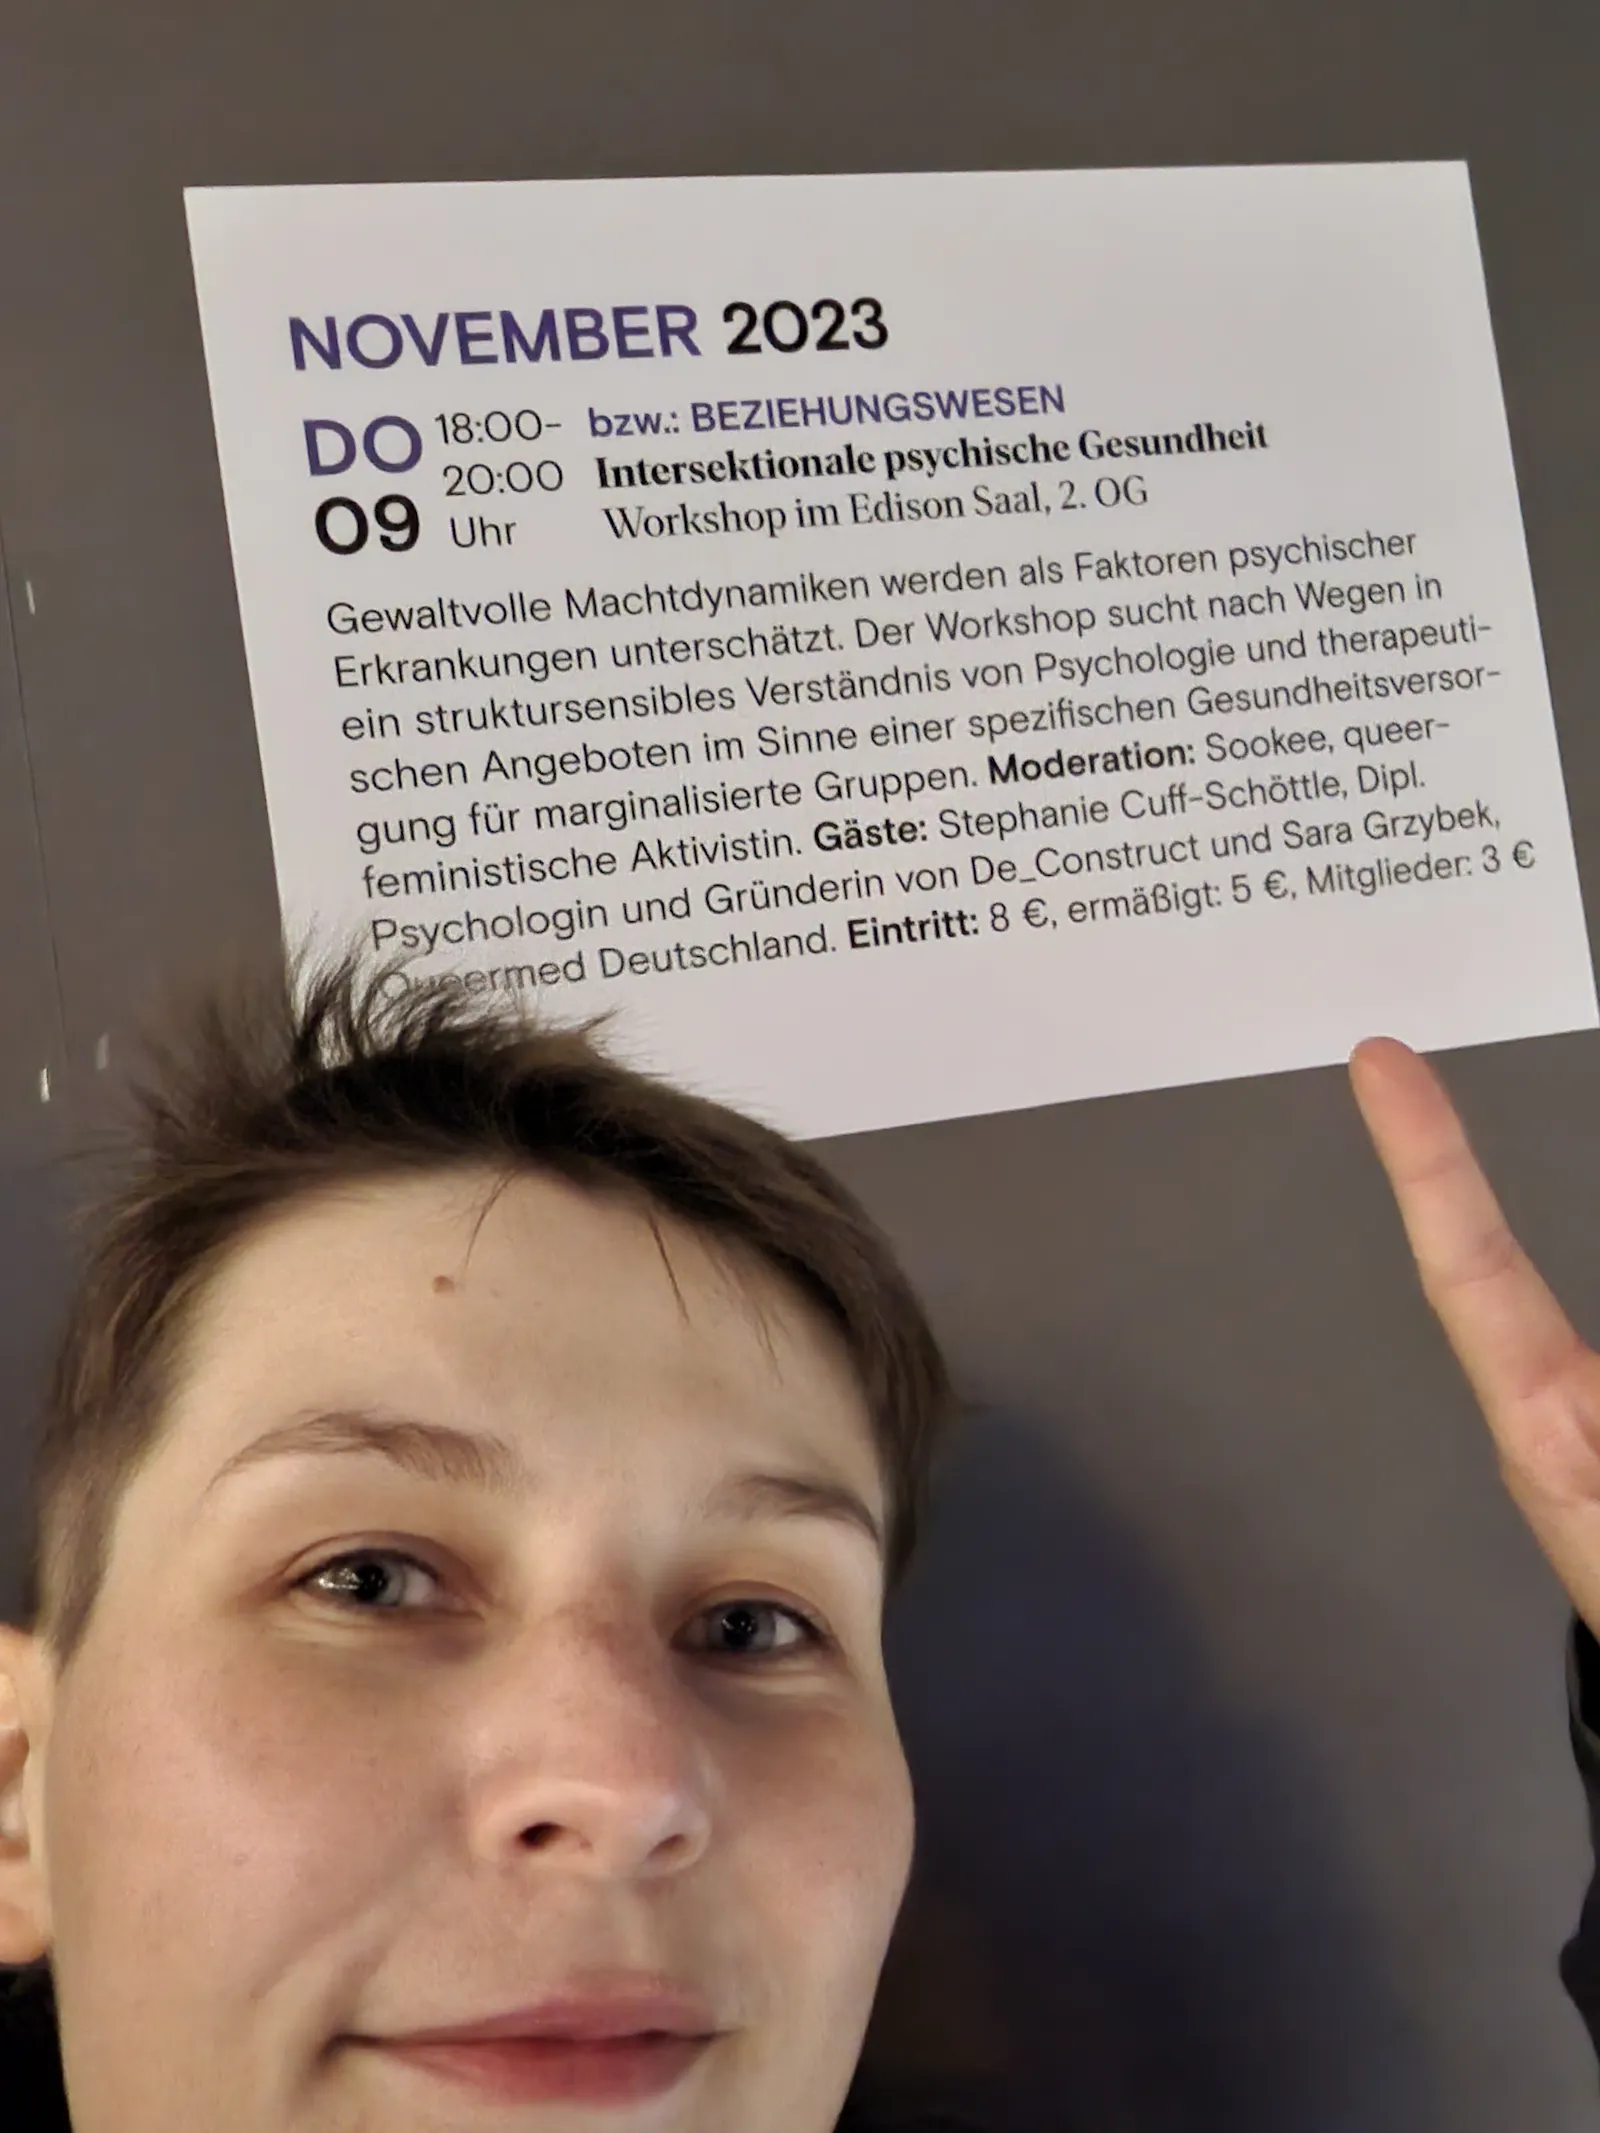 Queermed Gründer*in Sara Grzybek zeigt mit einem Zeigefinger auf ein Veranstaltungsposter. Die Veranstaltung lautet "Intersektionale psychische Gesundheit" und fand am 09.11.2023 im Urania in Berlin statt.